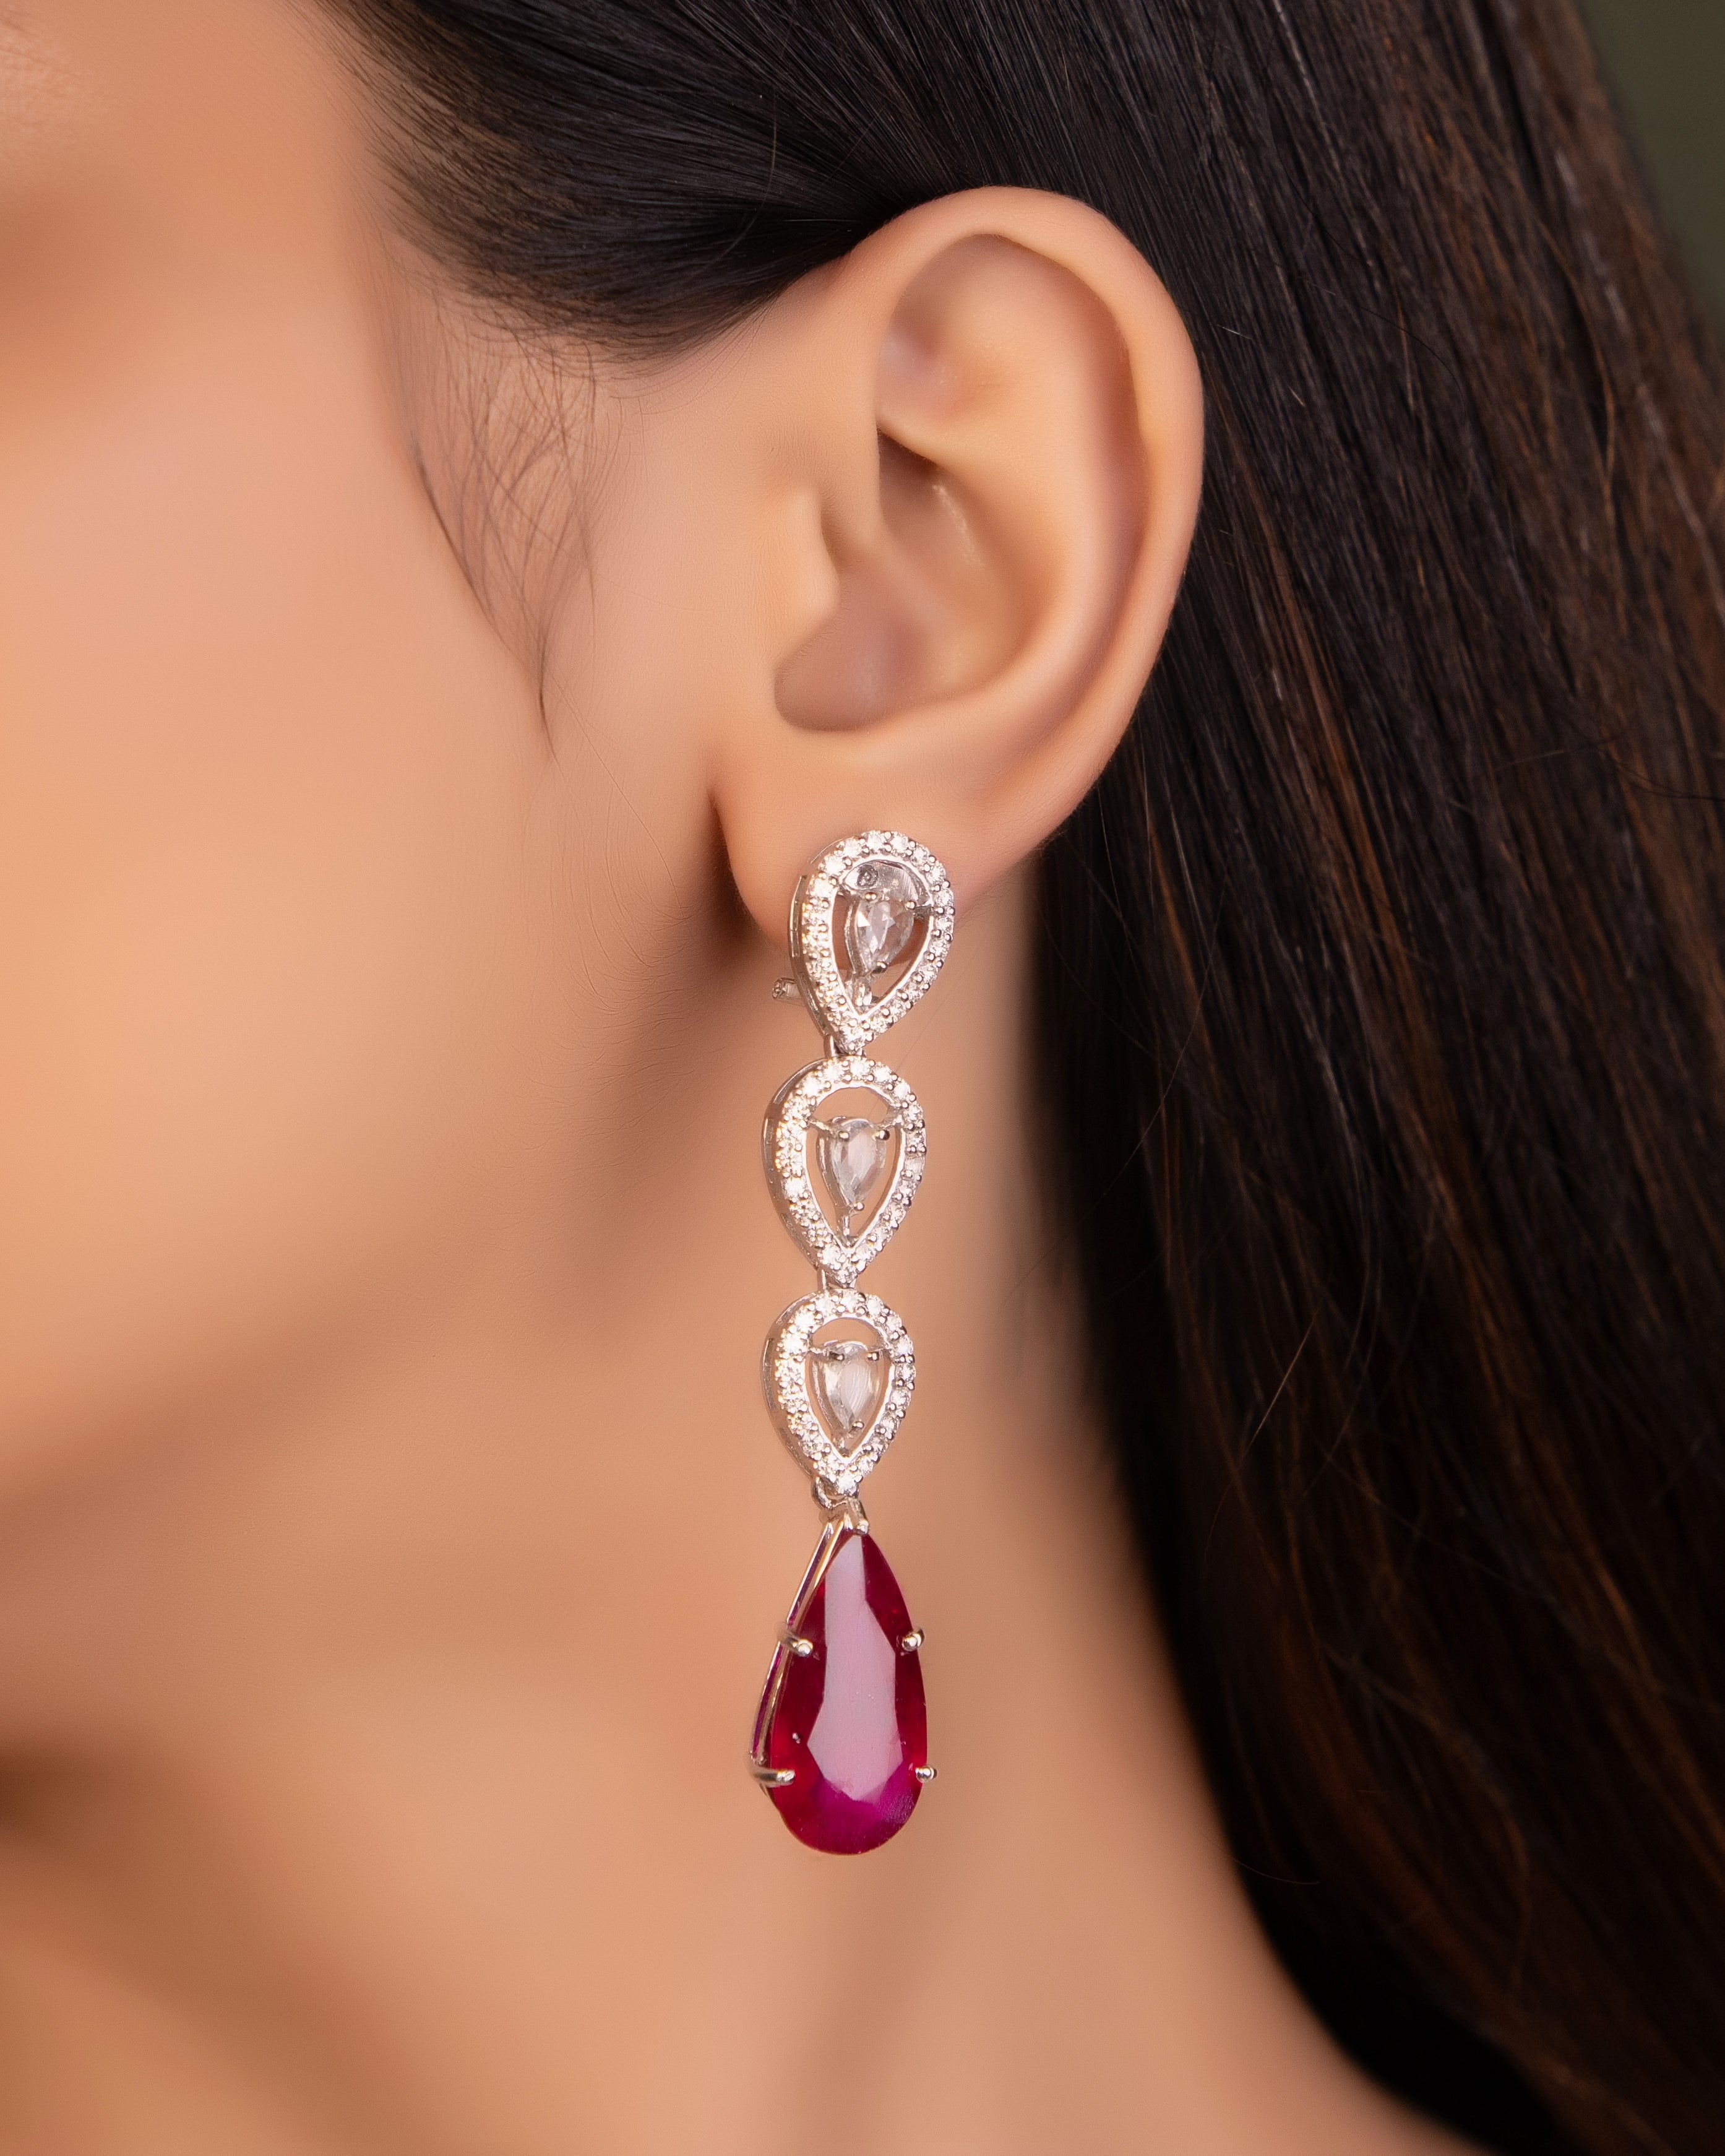 Lalitha Jewellers kukatpally Diamond studs collection | Diamond earrings in  lalitha kukatpally - YouTube